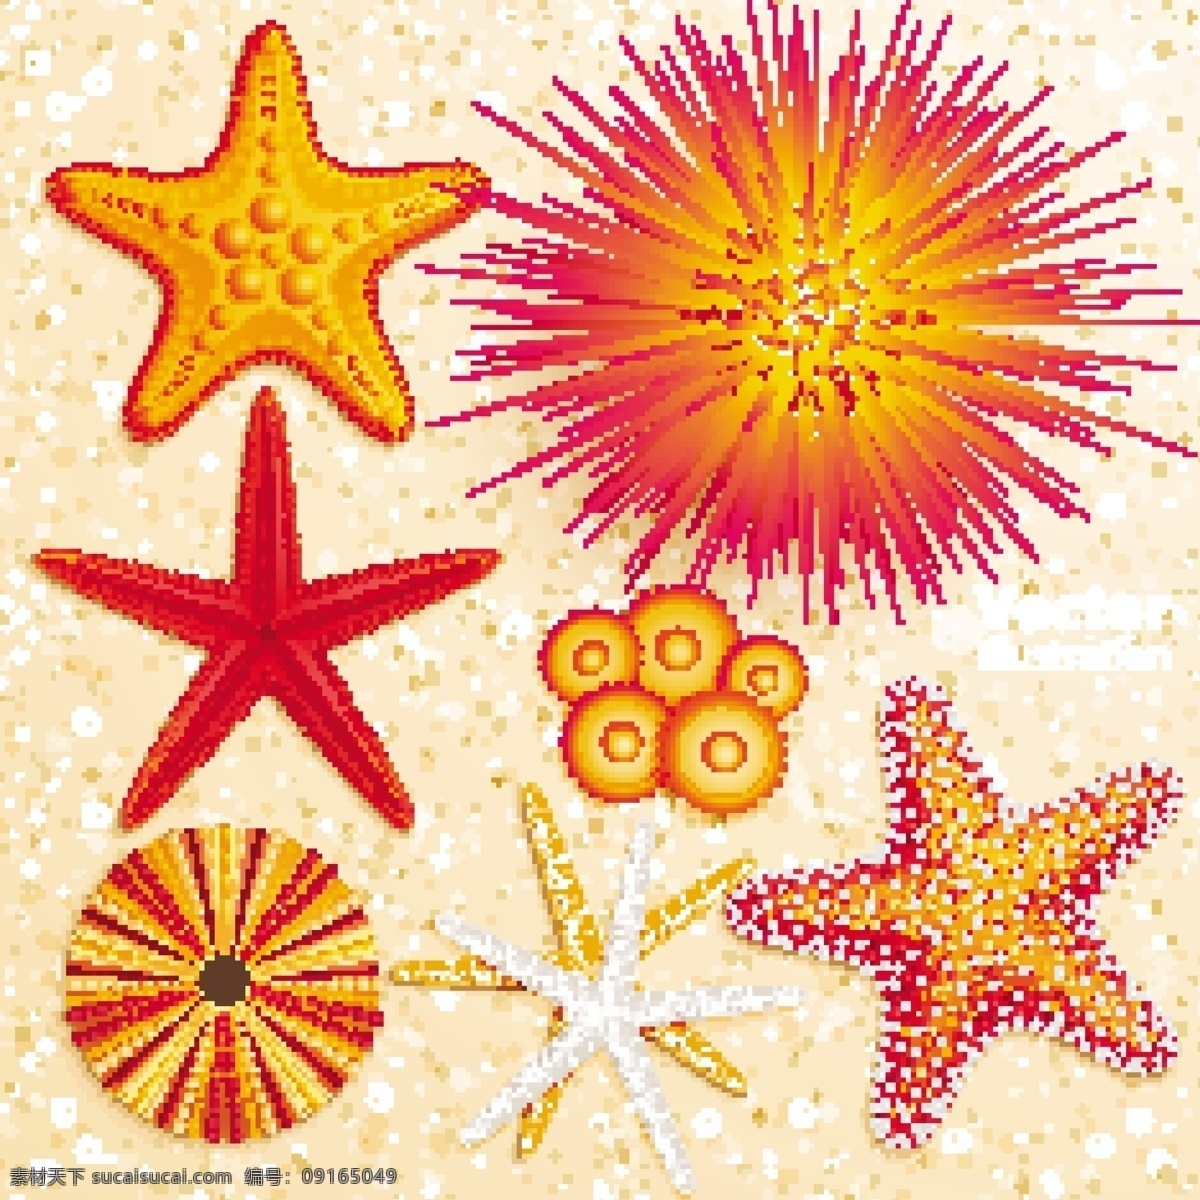 沙滩海洋生物 沙滩 海螺 海星 贝壳 矢量 海洋生物 生物世界